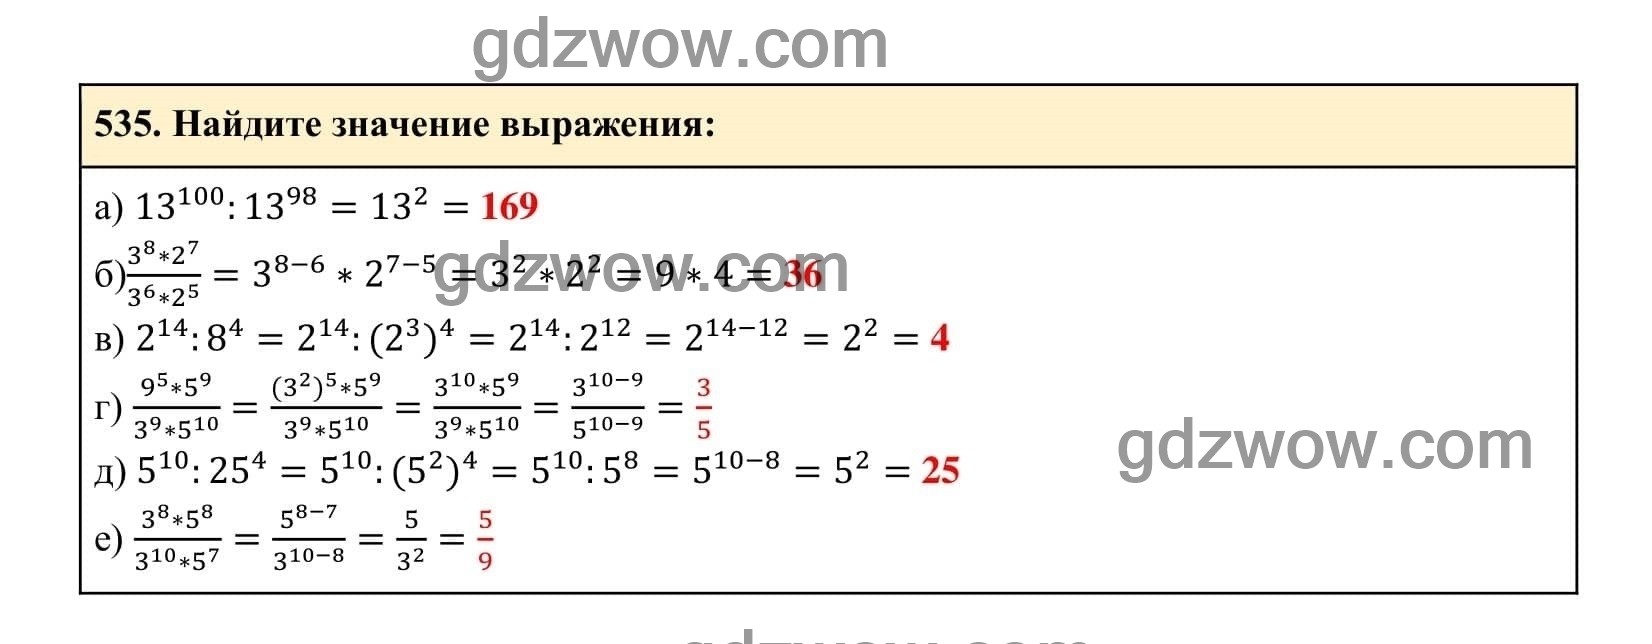 Упражнение 535 - ГДЗ по Алгебре 7 класс Учебник Макарычев (решебник) - GDZwow